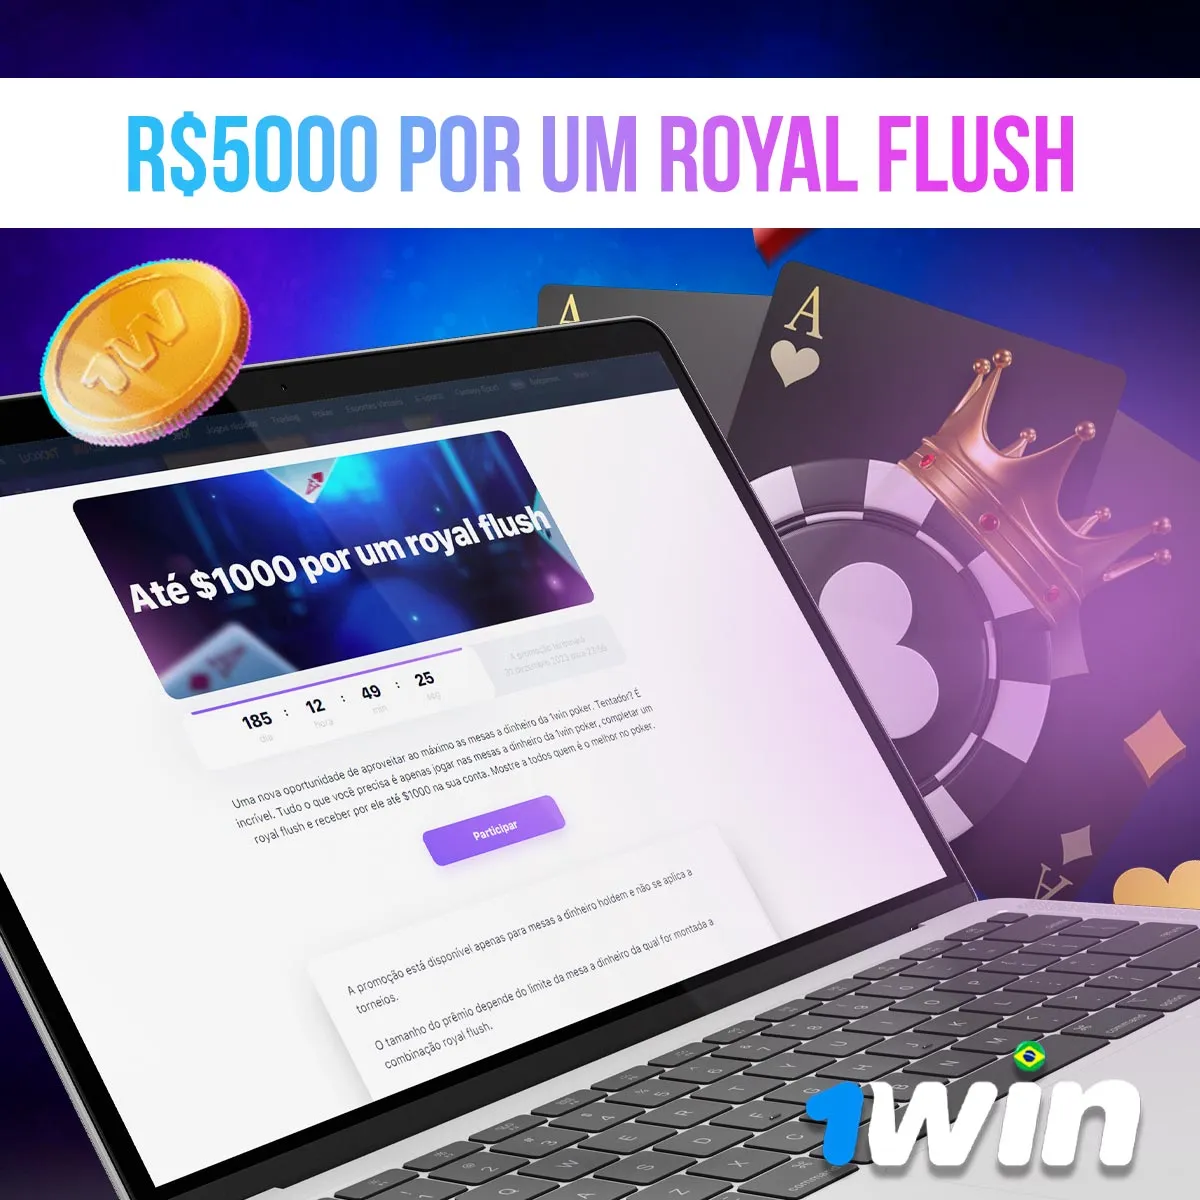 Análise do bônus de R$5000 por um Royal Flush da casa de apostas 1win no Brasil